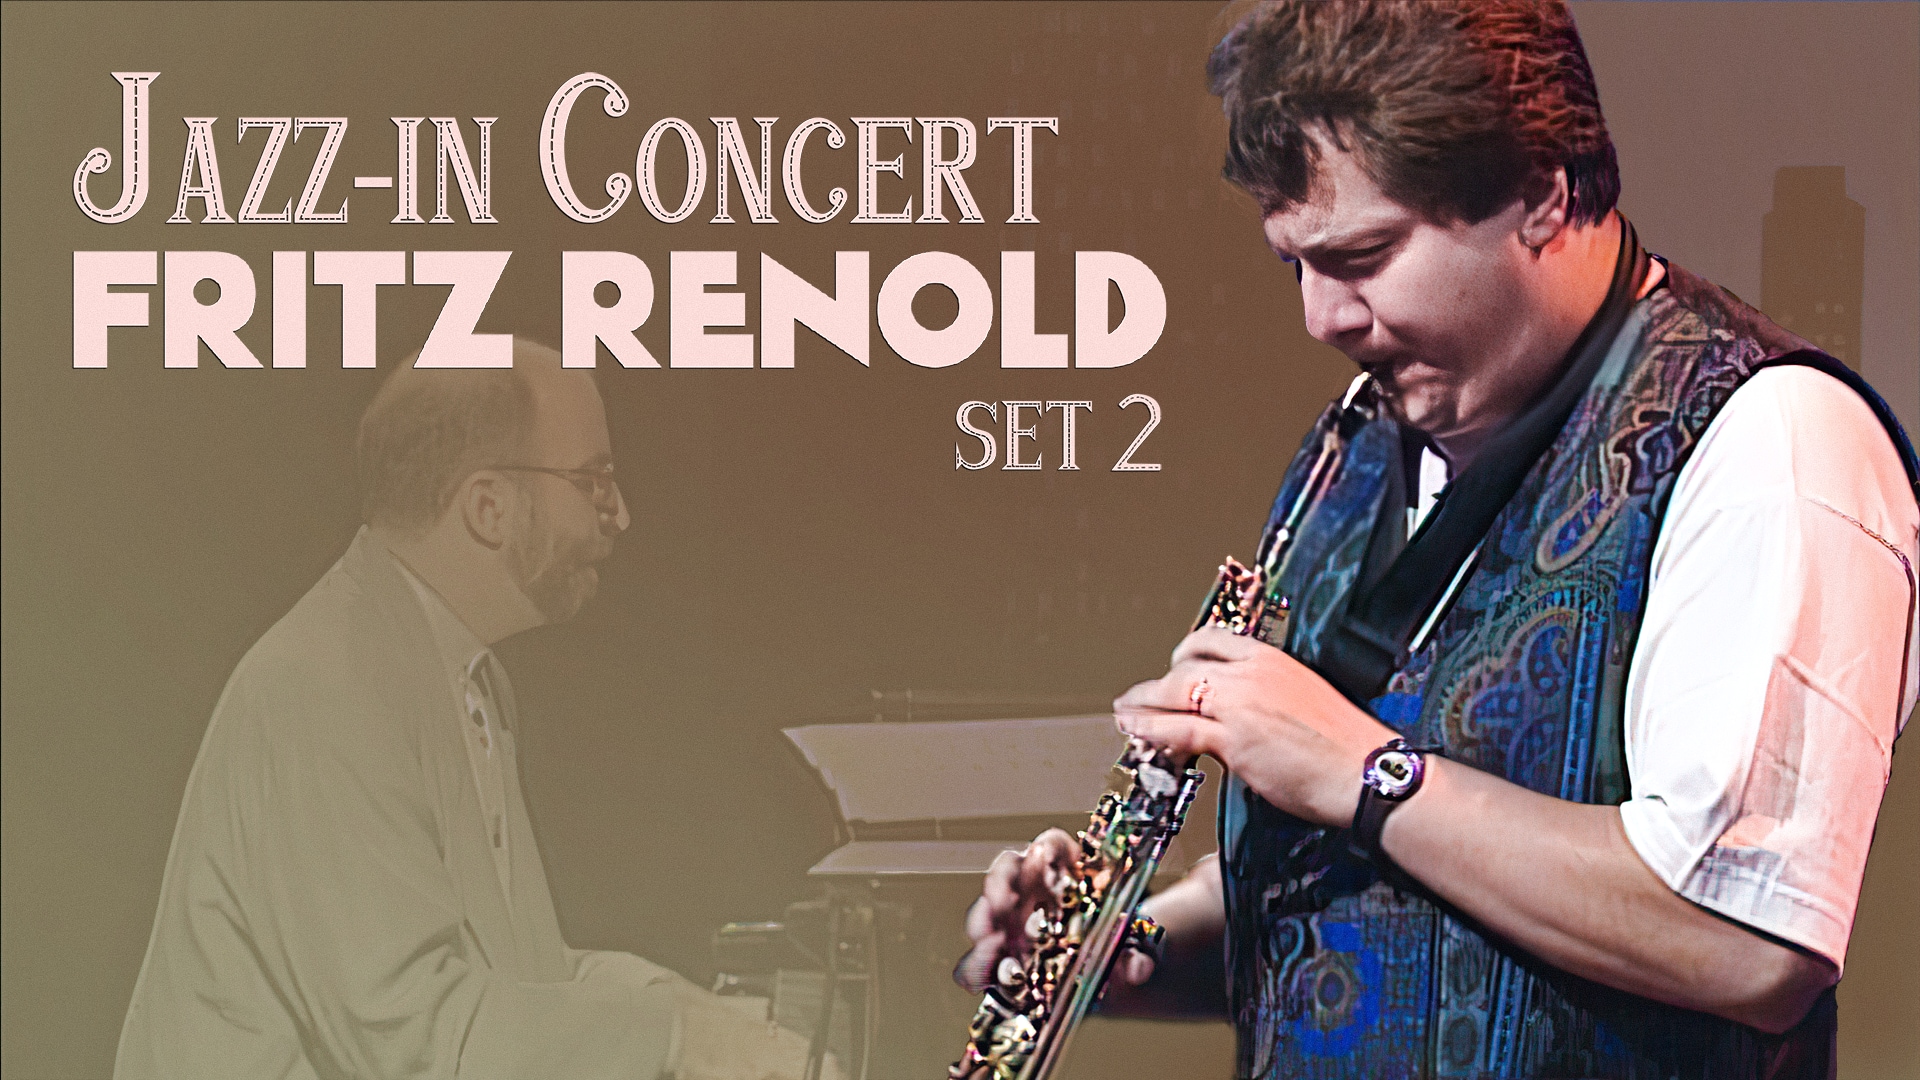 Jazz-in Concert : Fritz Renold (Set 2)